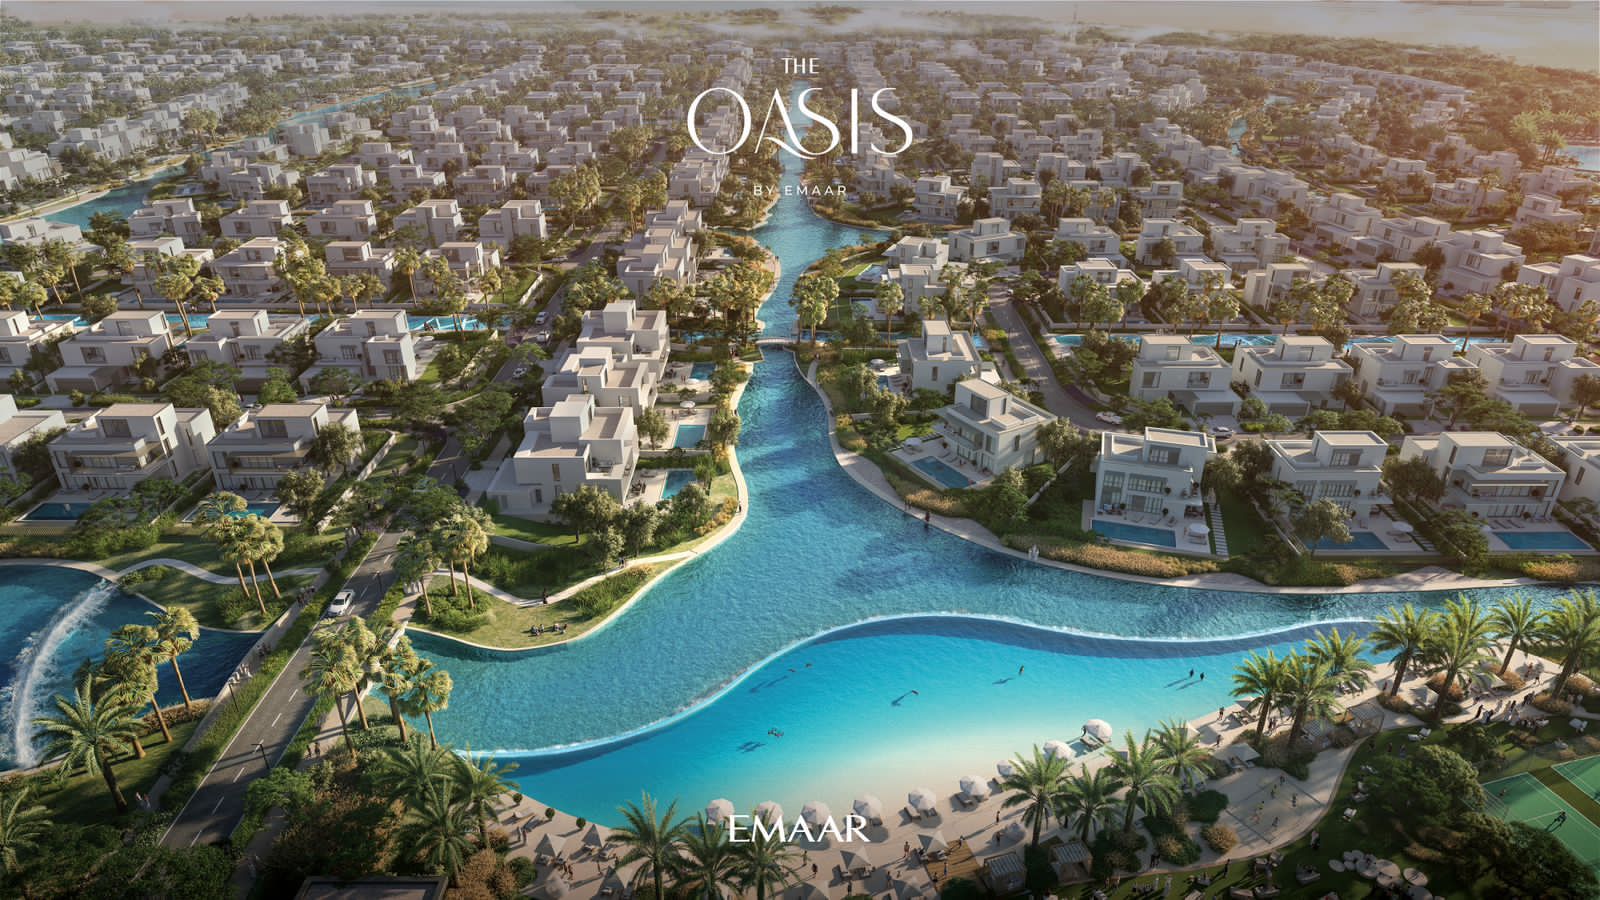 The Oasis by Emaar